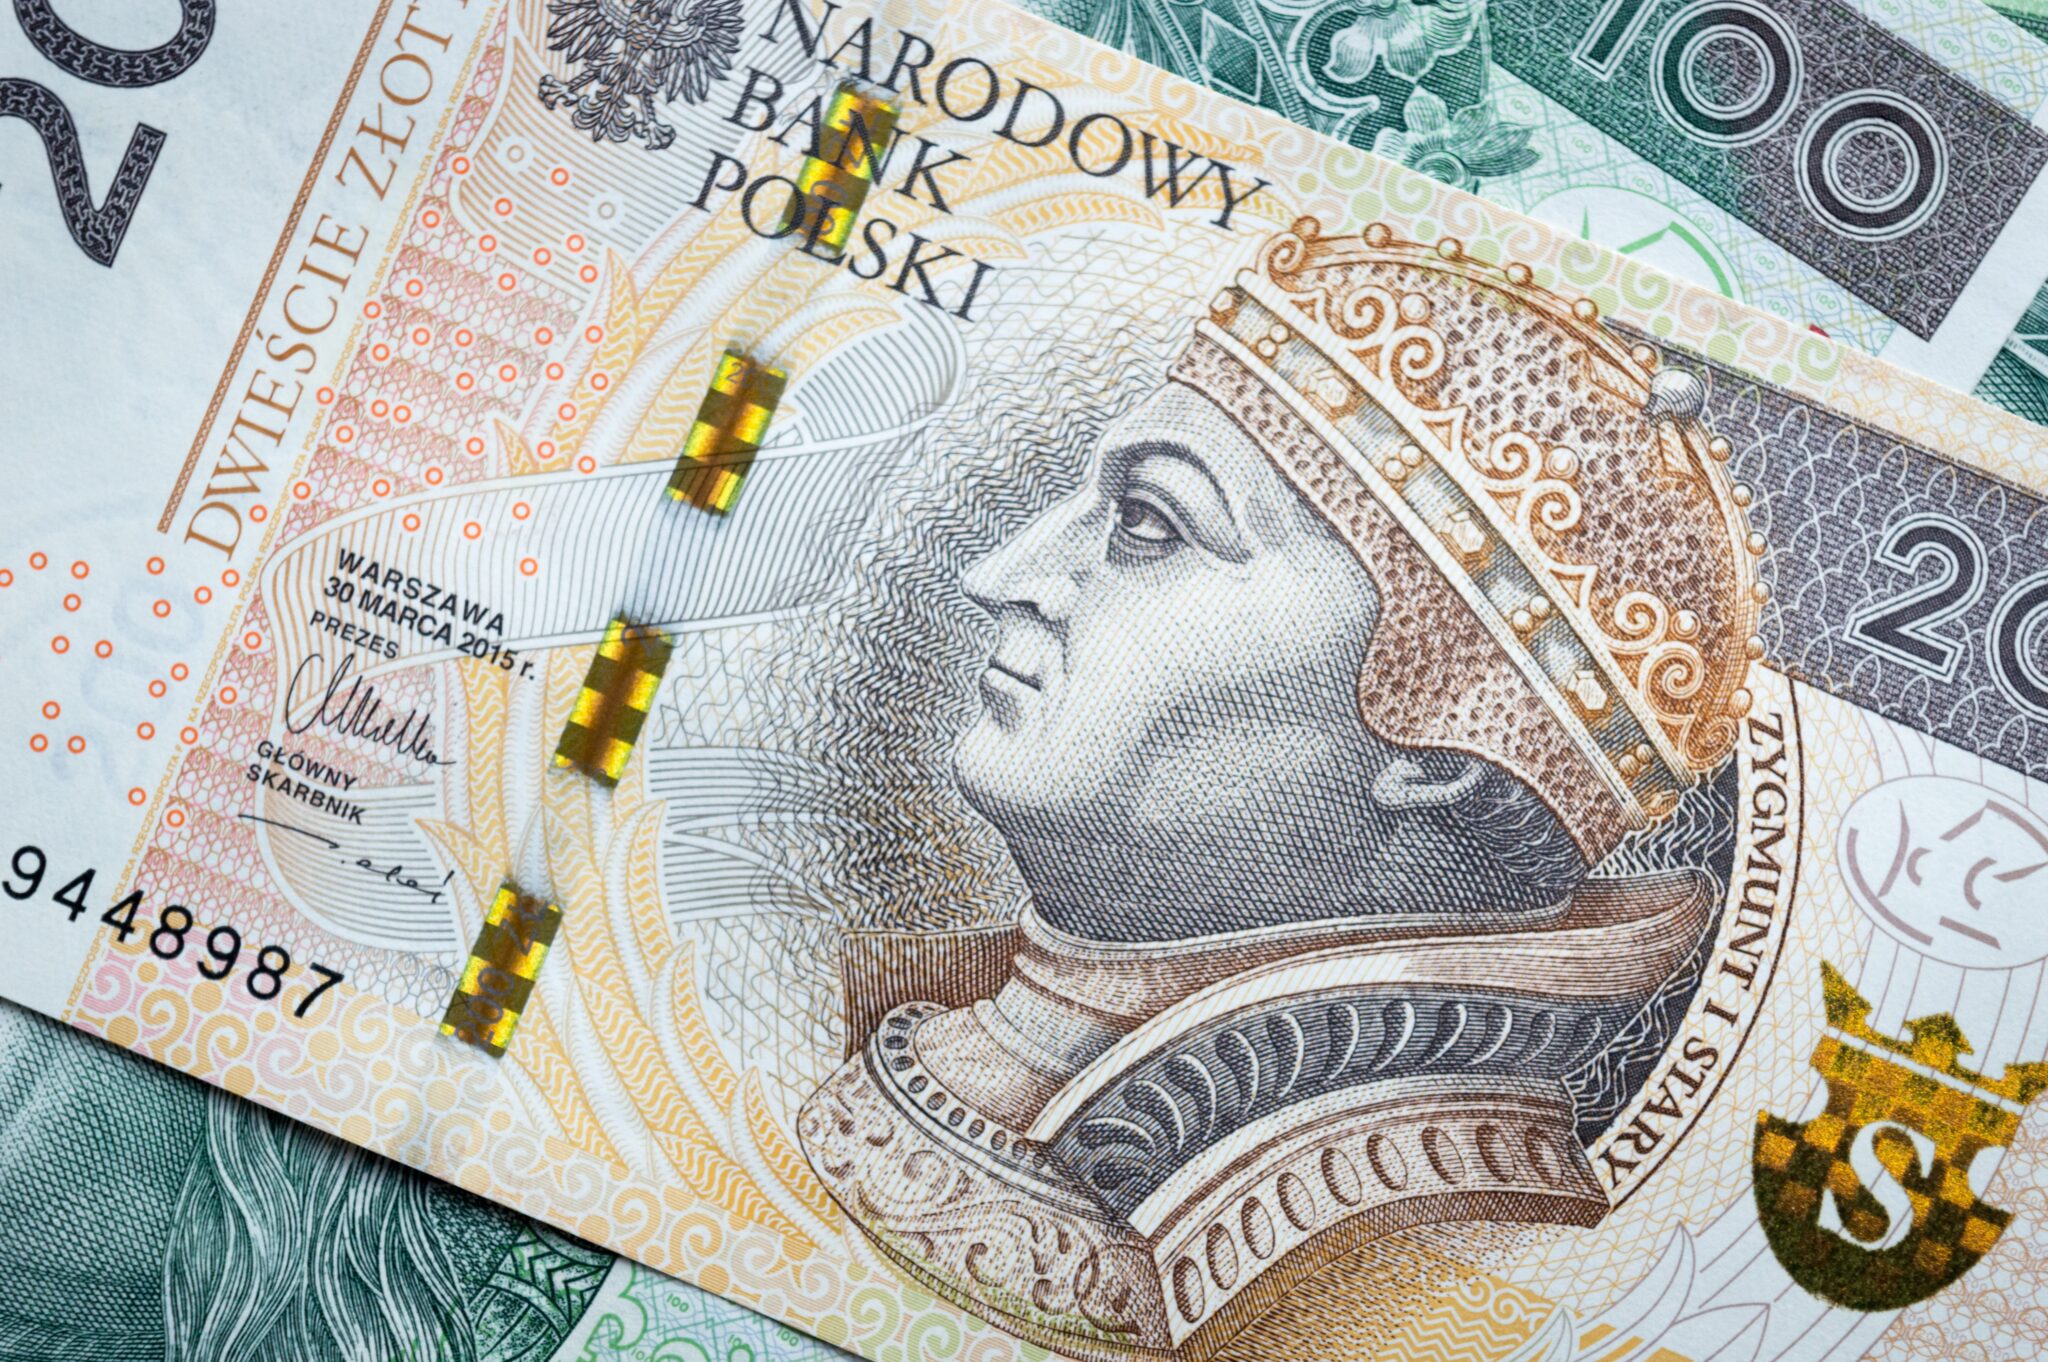 Zdjęcie polskiego banknotu o nominale 200 PLN